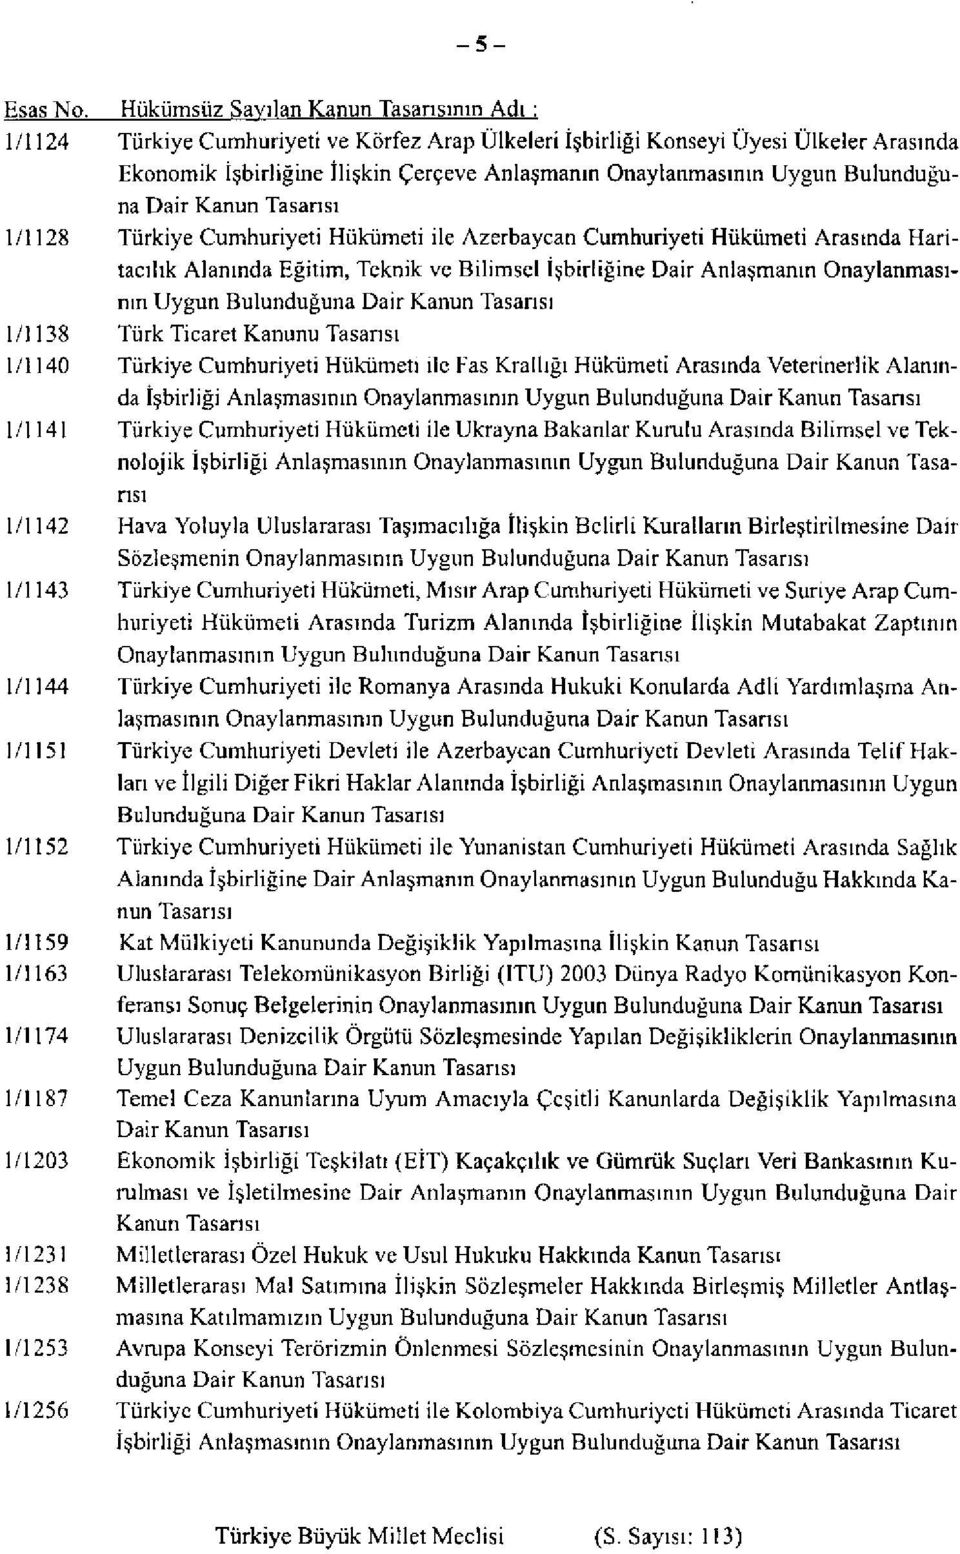 Uygun Bulunduğuna Dair Kanun Tasarısı 1/1128 Türkiye Cumhuriyeti Hükümeti ile Azerbaycan Cumhuriyeti Hükümeti Arasında Haritacılık Alanında Eğitim, Teknik ve Bilimsel İşbirliğine Dair Anlaşmanın